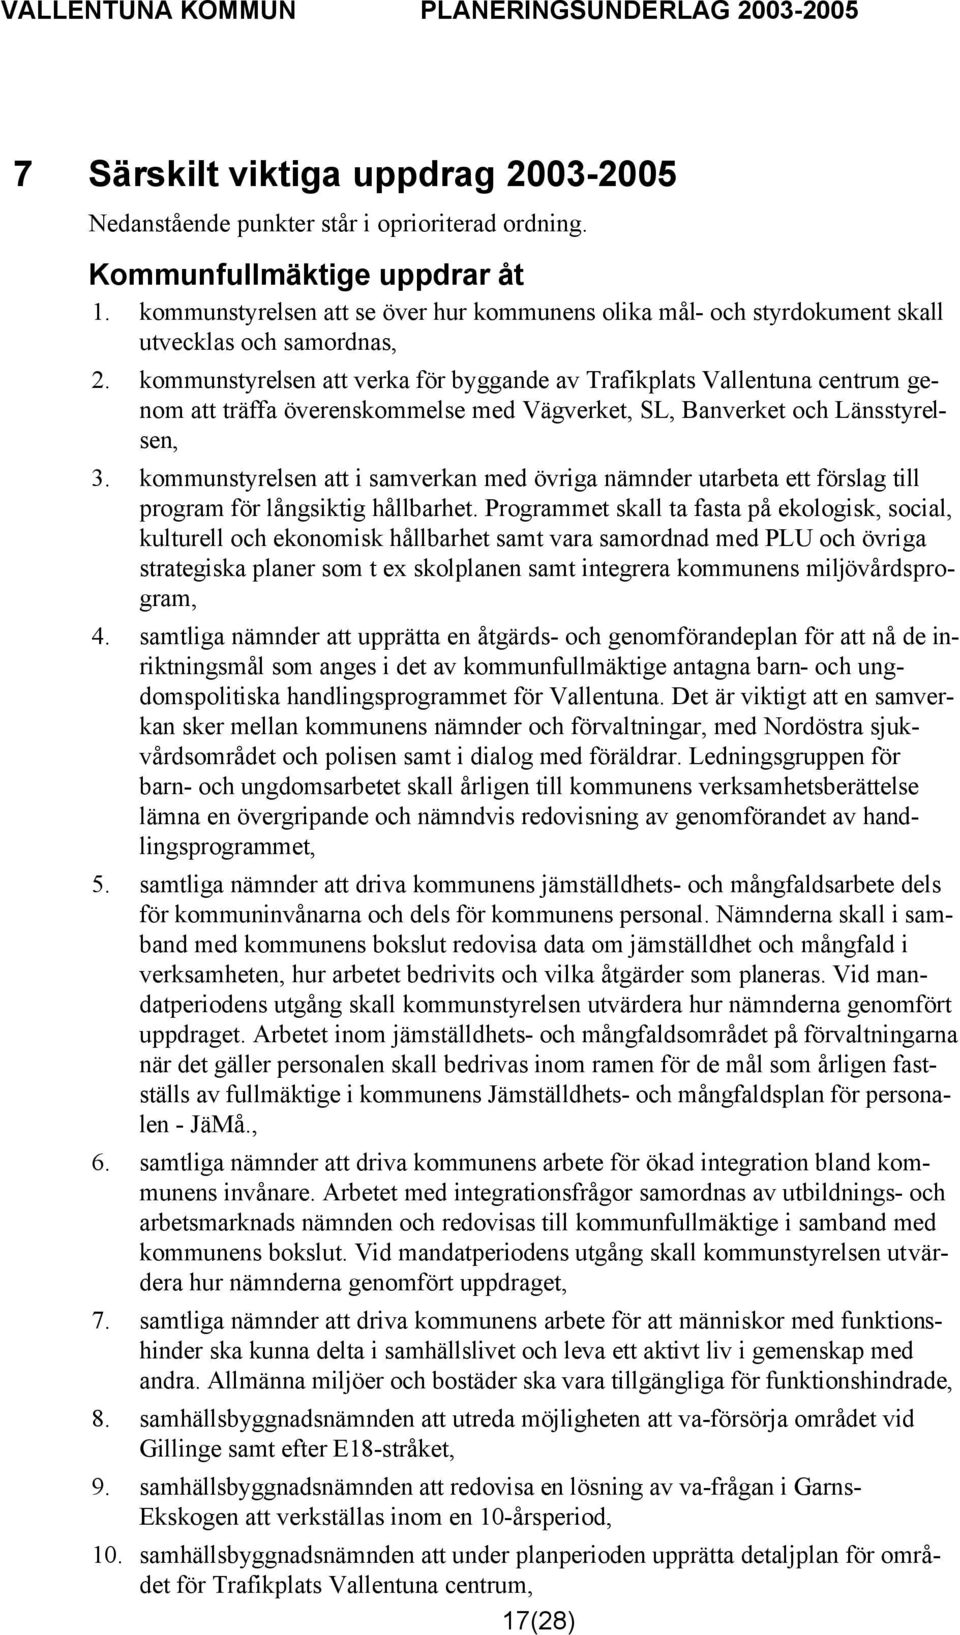 kommunstyrelsen att verka för byggande av Trafikplats Vallentuna centrum genom att träffa överenskommelse med Vägverket, SL, Banverket och Länsstyrelsen, 3.